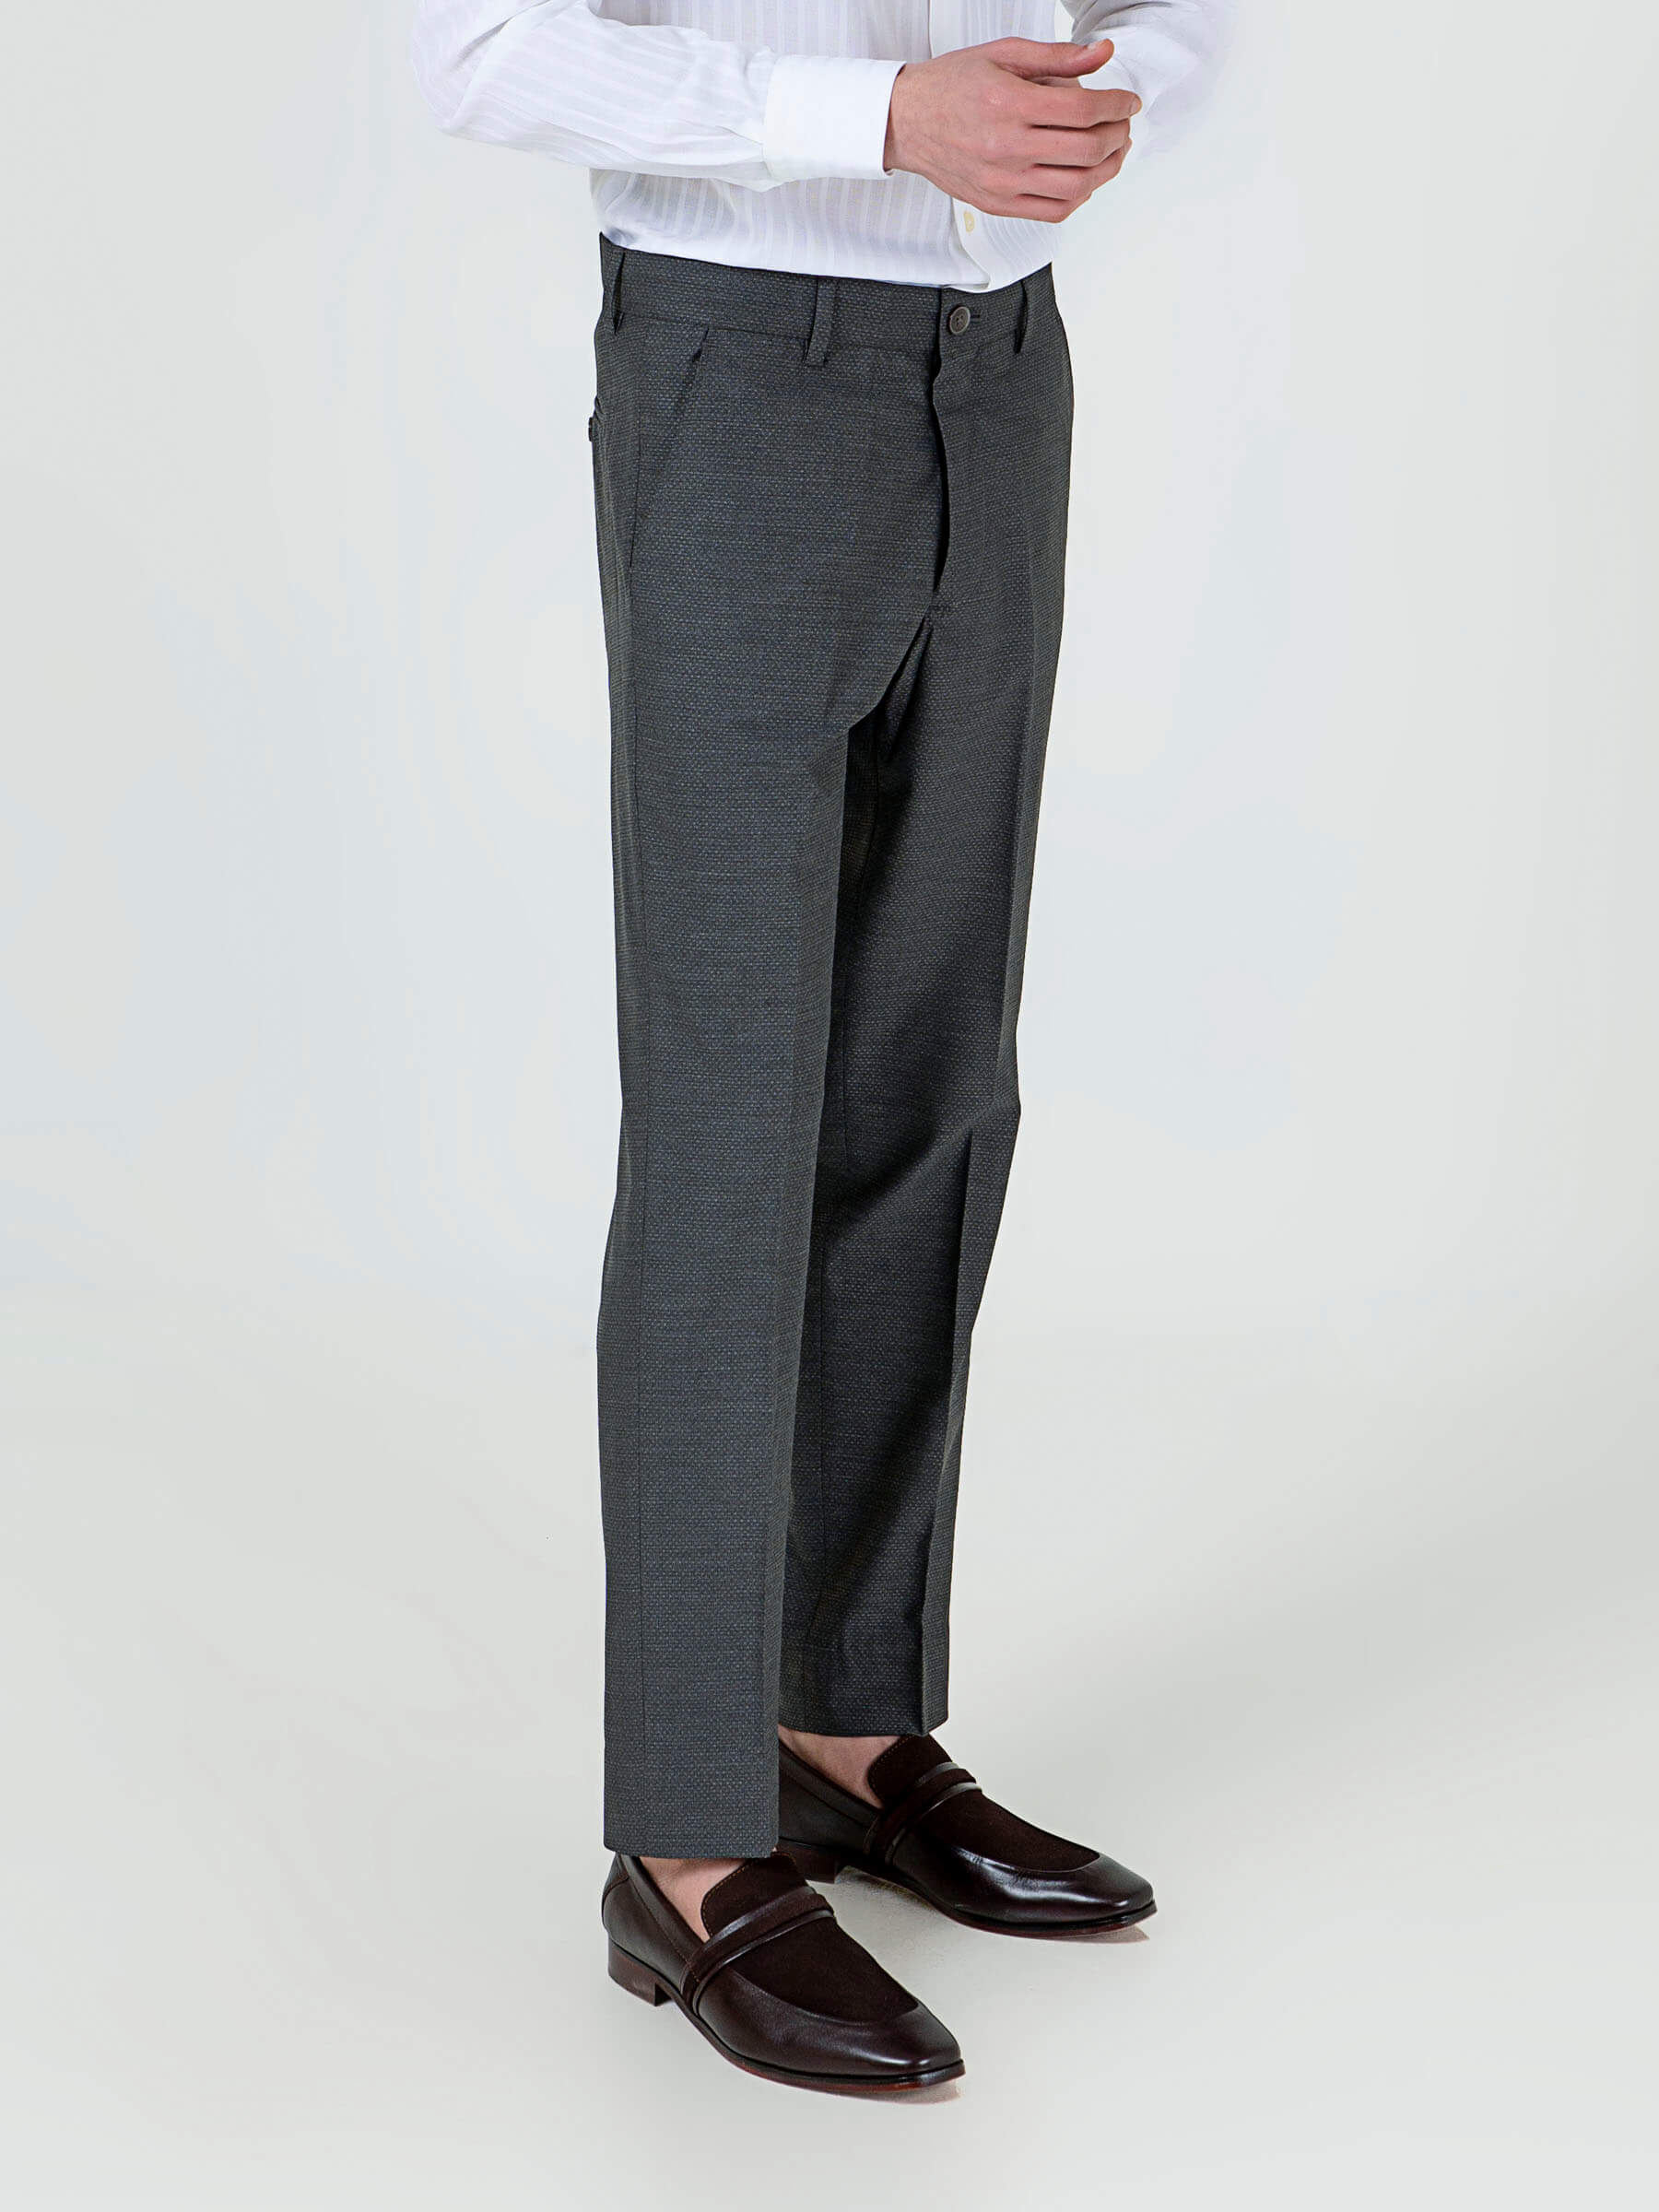 2022 Men's Fashion Stretch Dress Pants Slim Fit stripe Casual Pants  Business Suit Pants Golf Pants Formal Trousers - Walmart.com